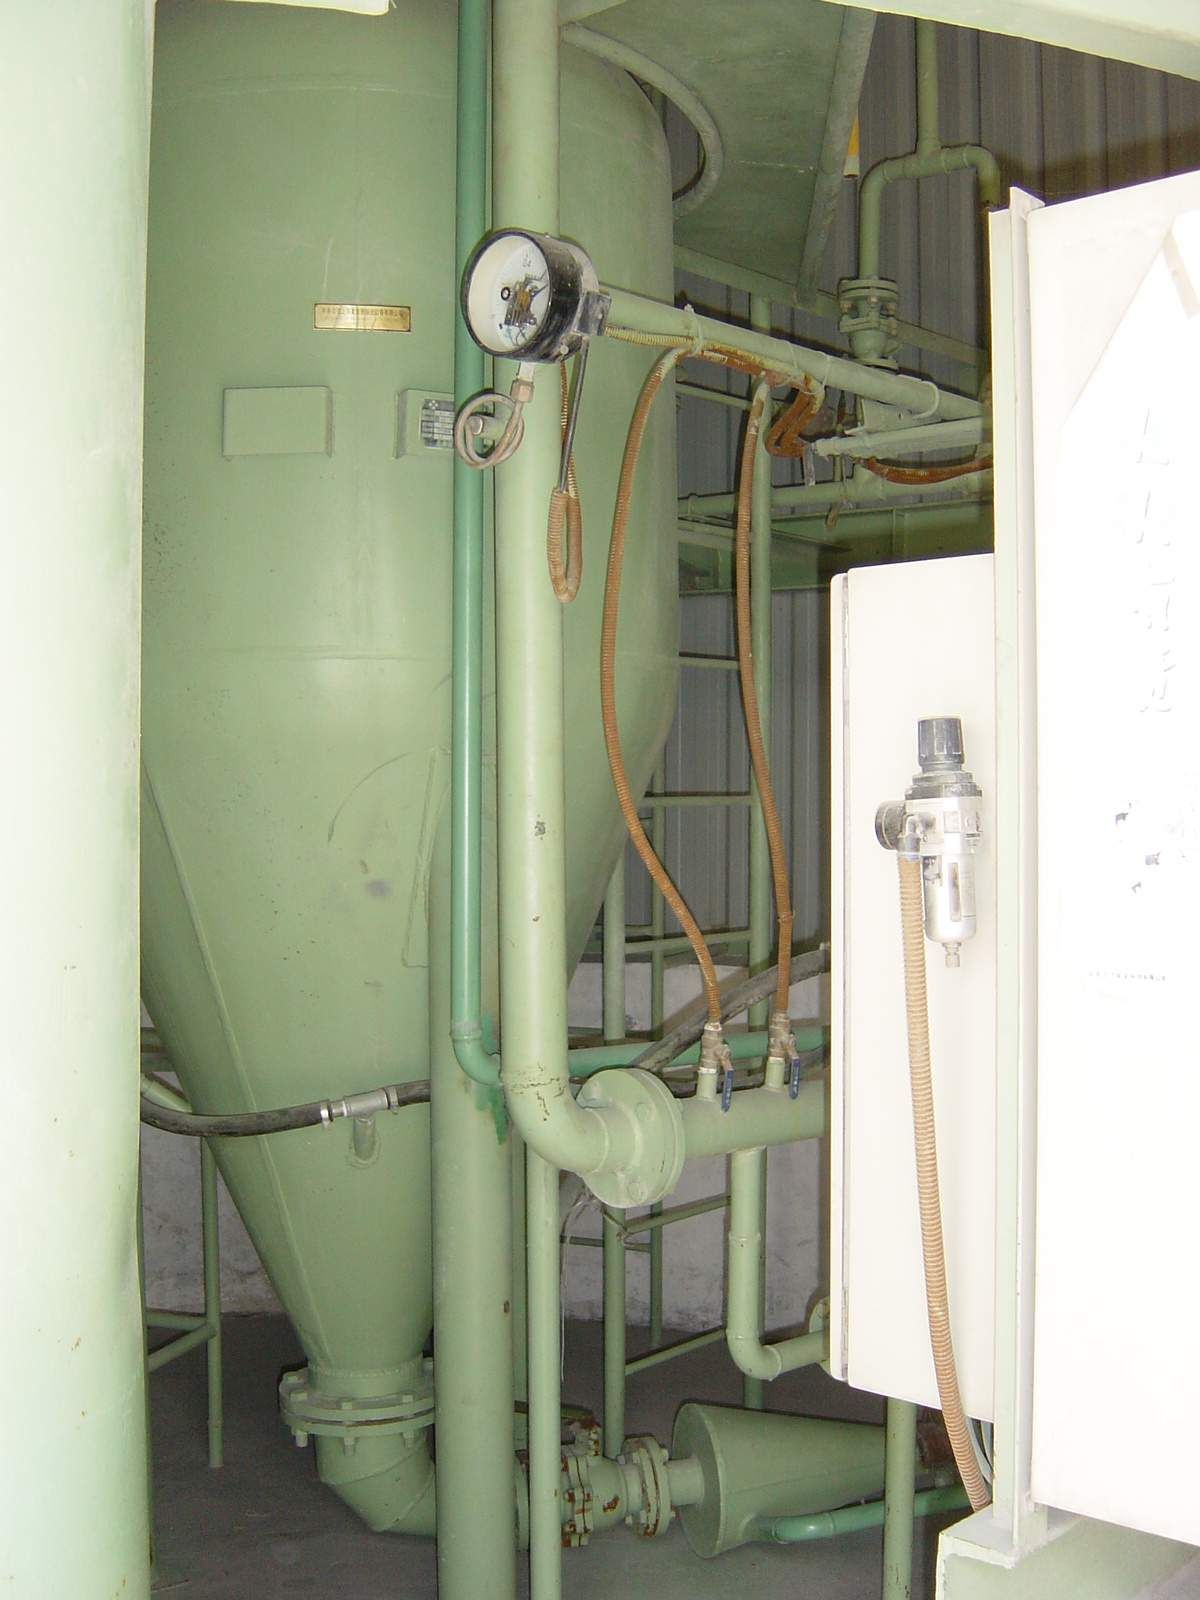 江苏常熟芬欧纸业热电公司石英砂-石灰石下行式正压密相气力输送仓泵1-2号线